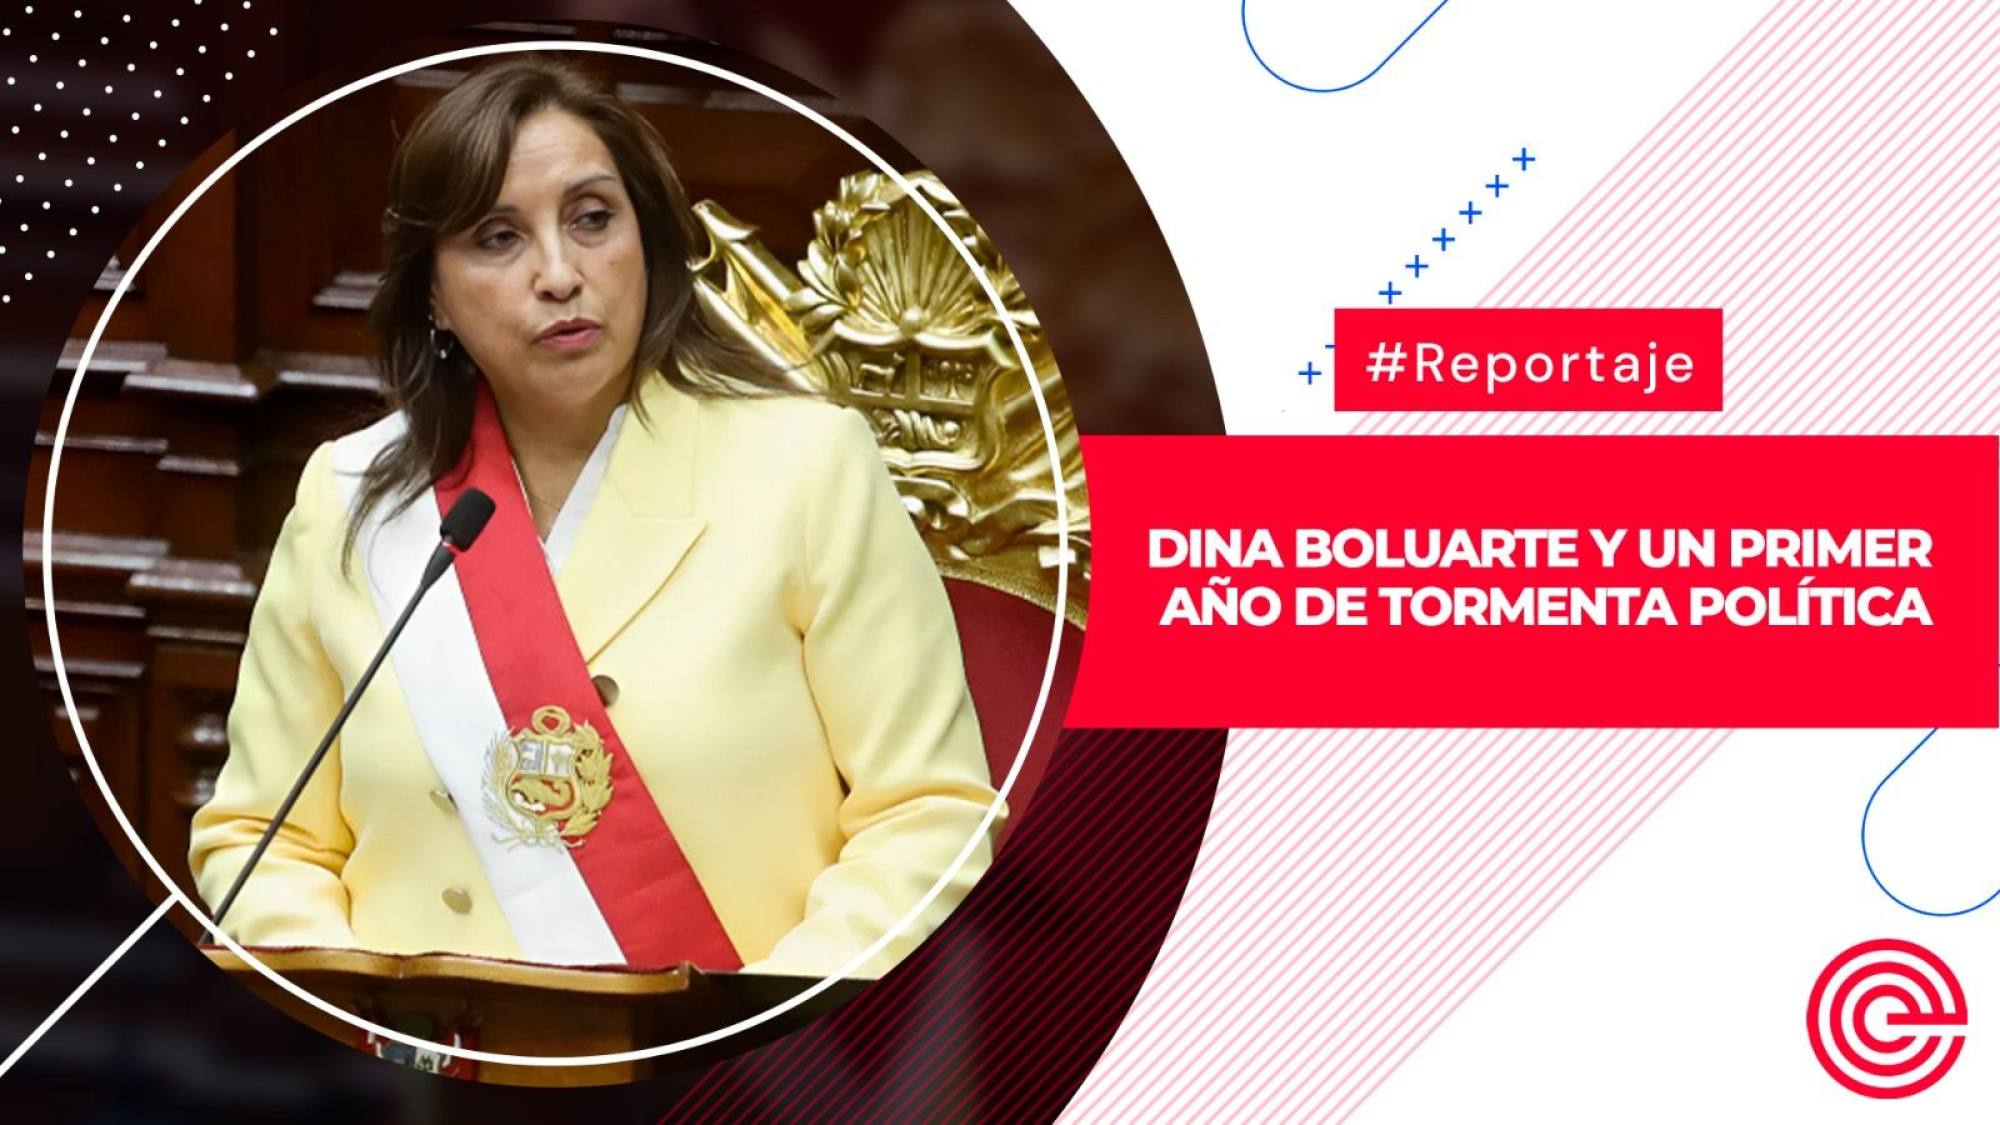 Dina Boluarte y un primer año de tormenta política, Epicentro TV